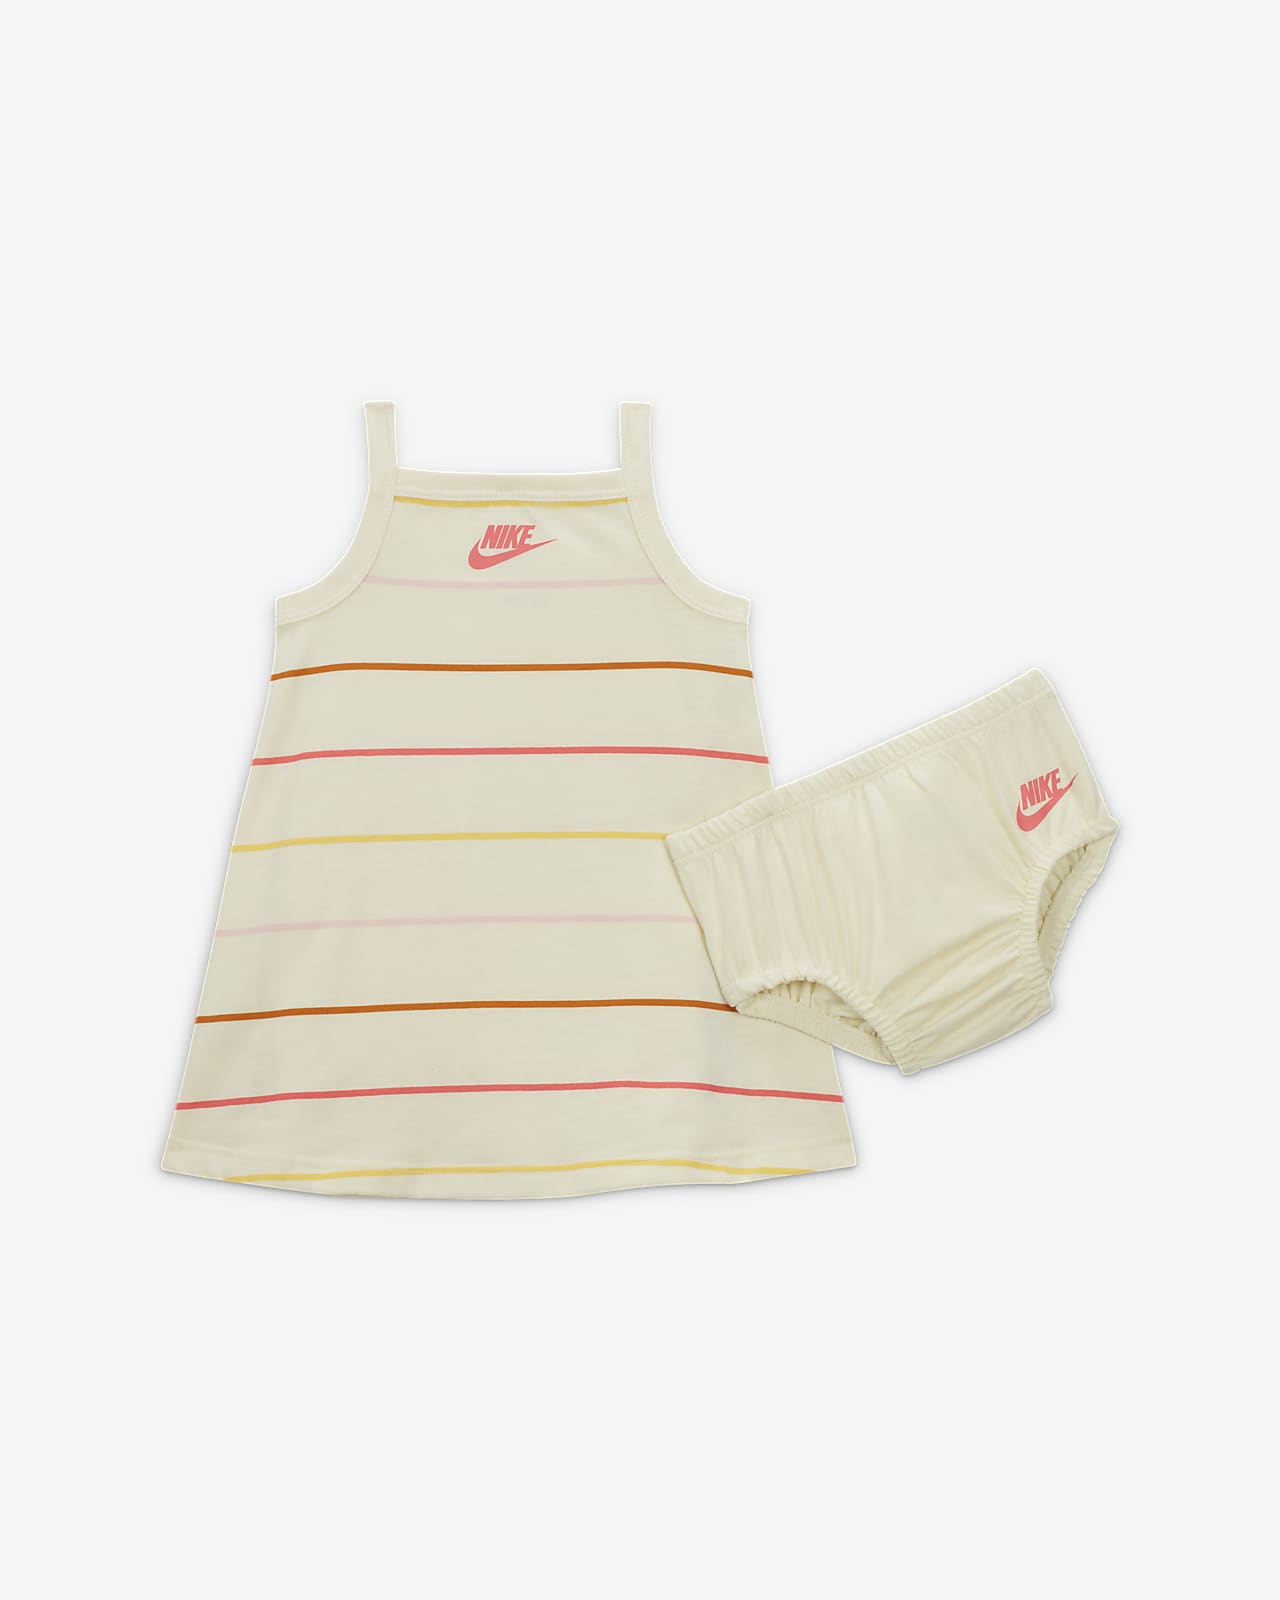 Robe Nike « Let's Roll » Dress pour bébé